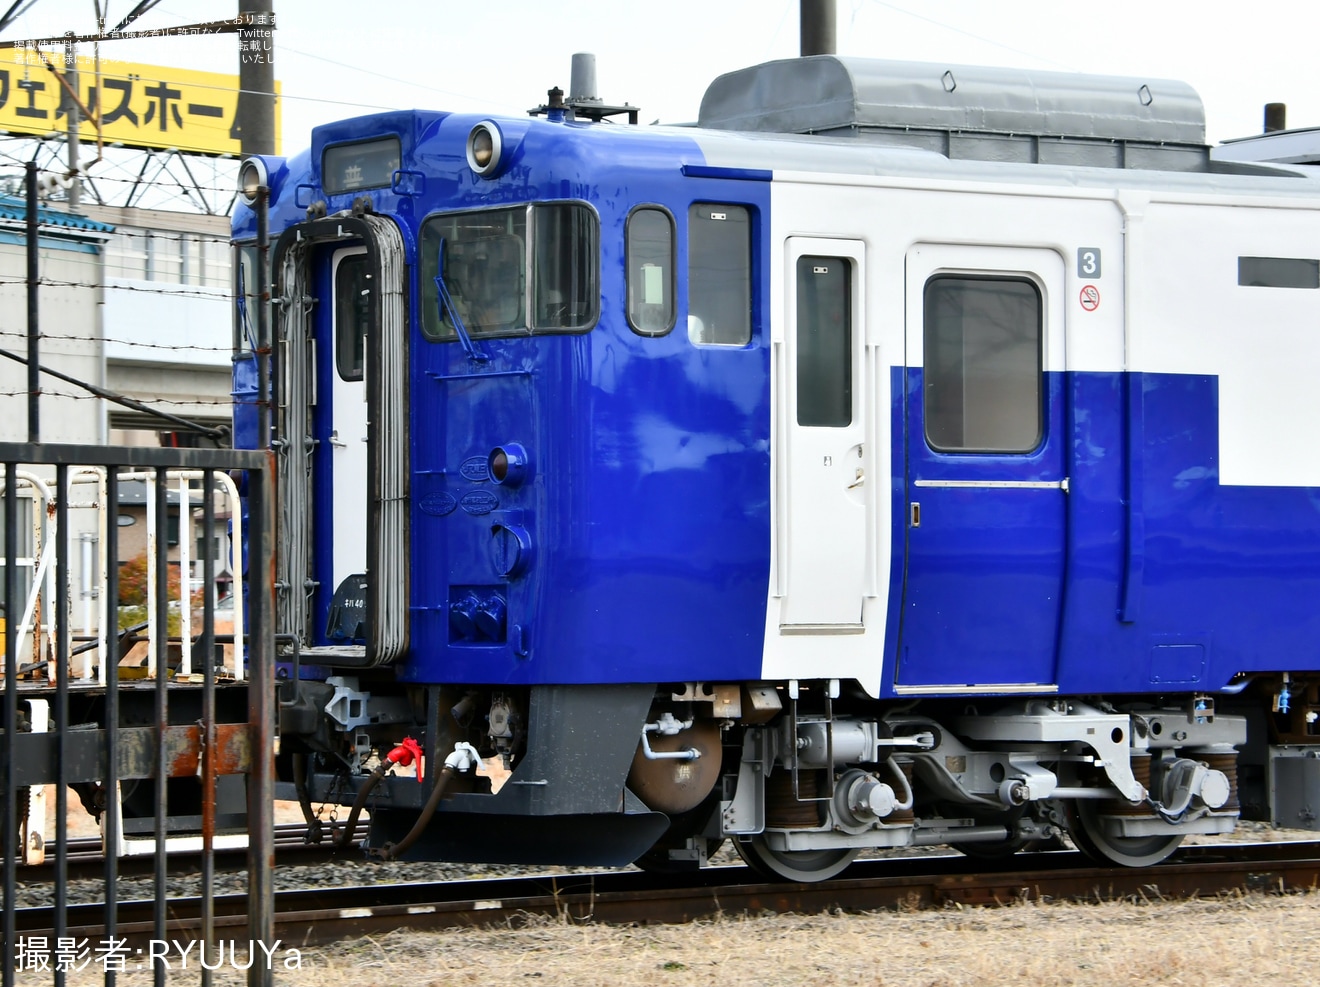 【JR東】越乃 Shu*kuraの3号車であるキハ40-552が再塗装の拡大写真